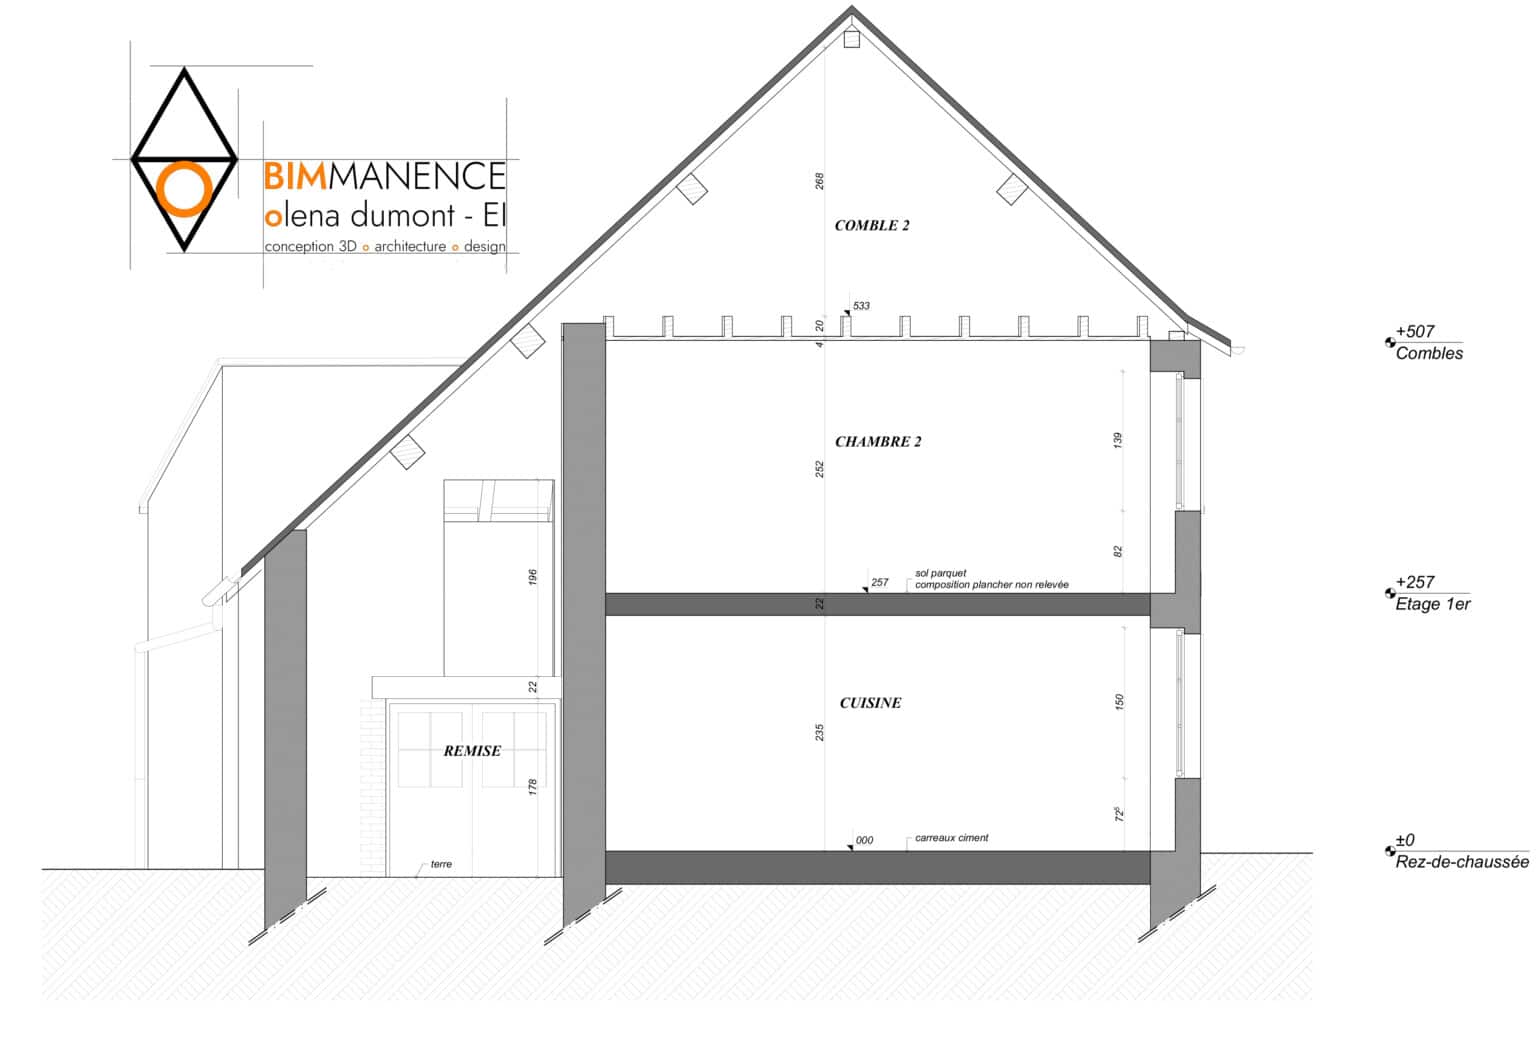 Etat des lieux Conception 3D BIM Manence Olena Dumont Architecte concept projet bim modeling design (5) dépôt permis de construire